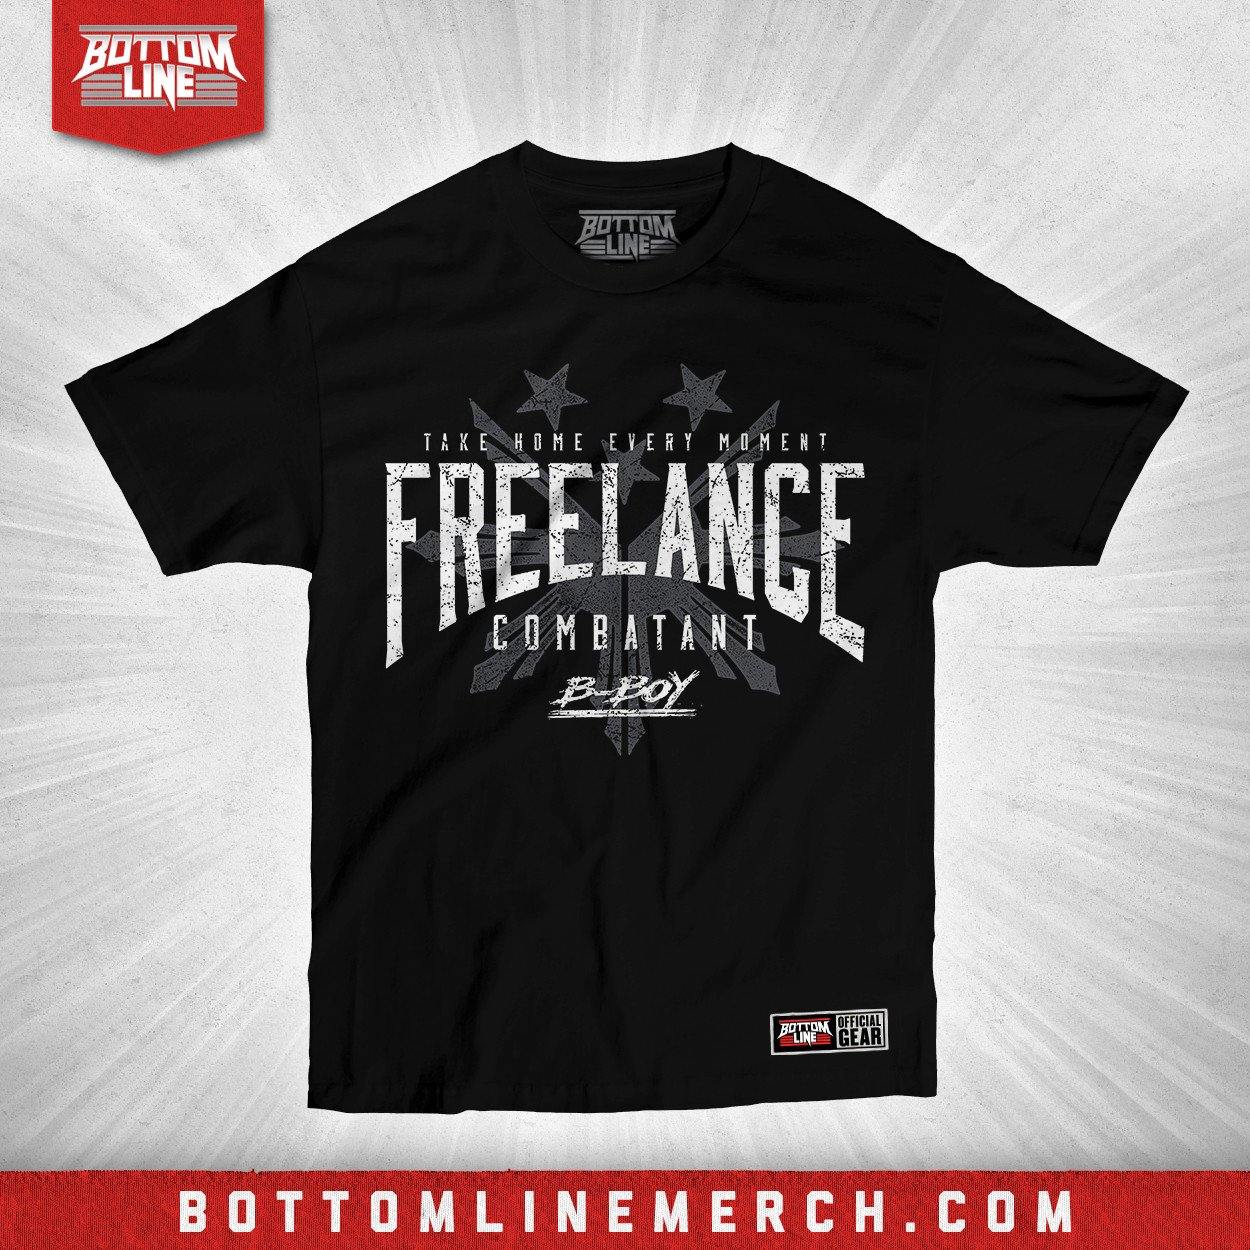 Buy Now – B-Boy "Freelance Combatant" Shirt – Wrestler & Wrestling Merch – Bottom Line